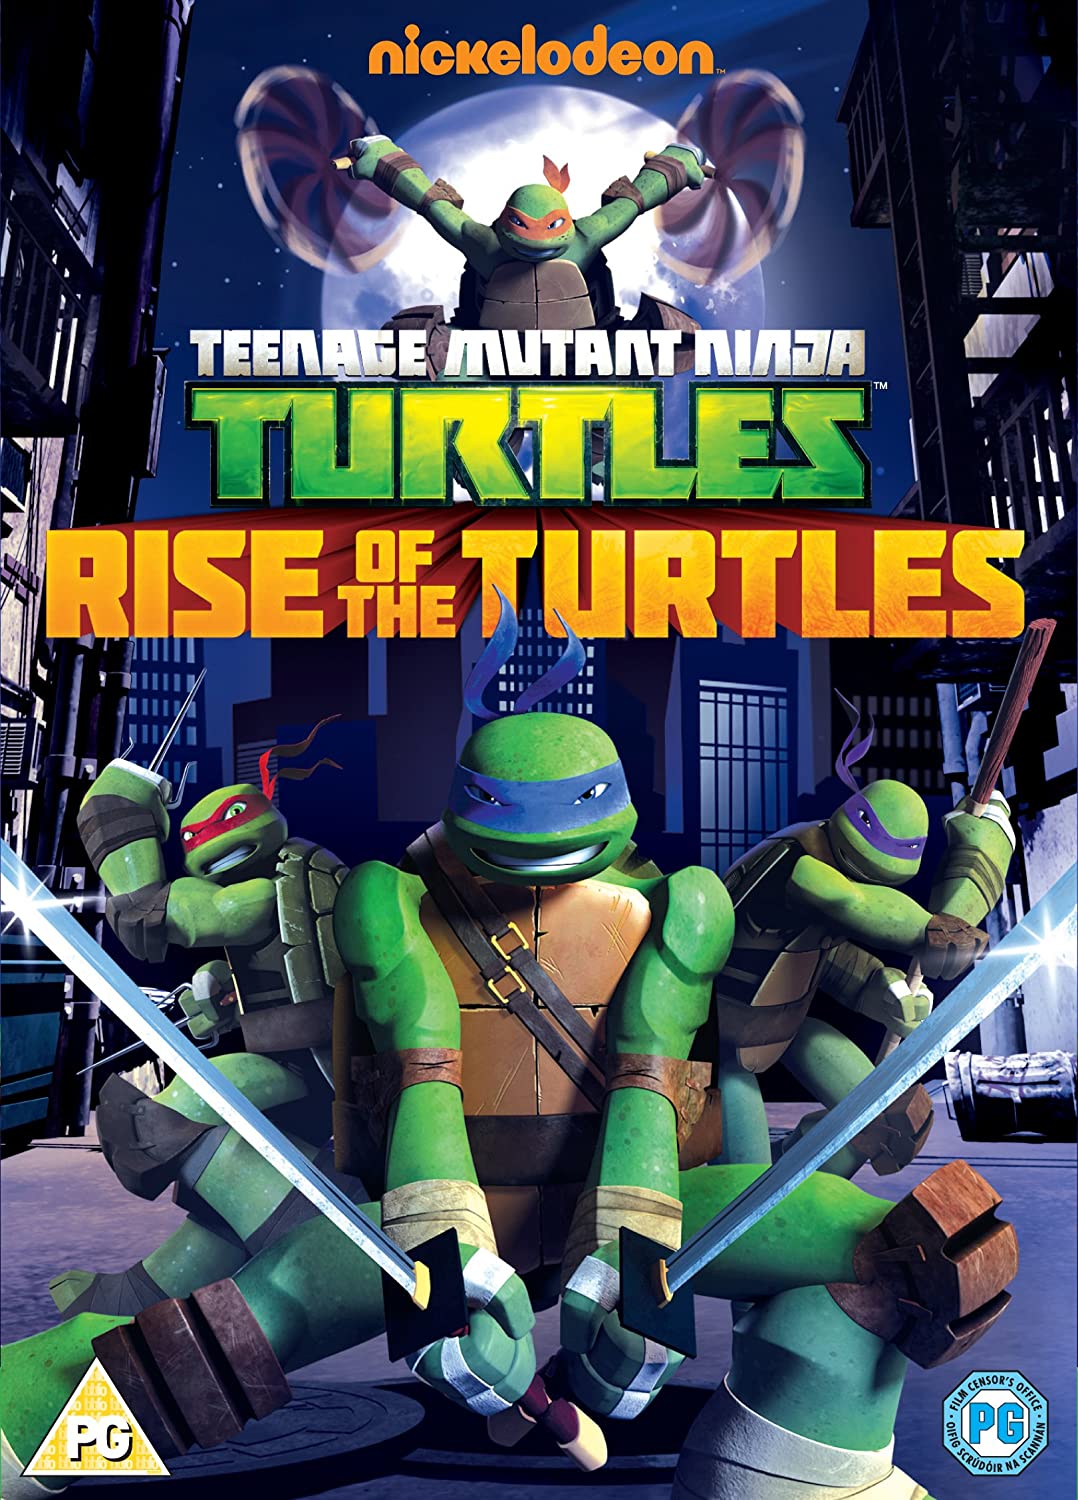 Teenage Mutant Ninja Turtles: Season One, Vol. 1 - Rise of the Turtles [2012] - Action/Adventure [DVD]